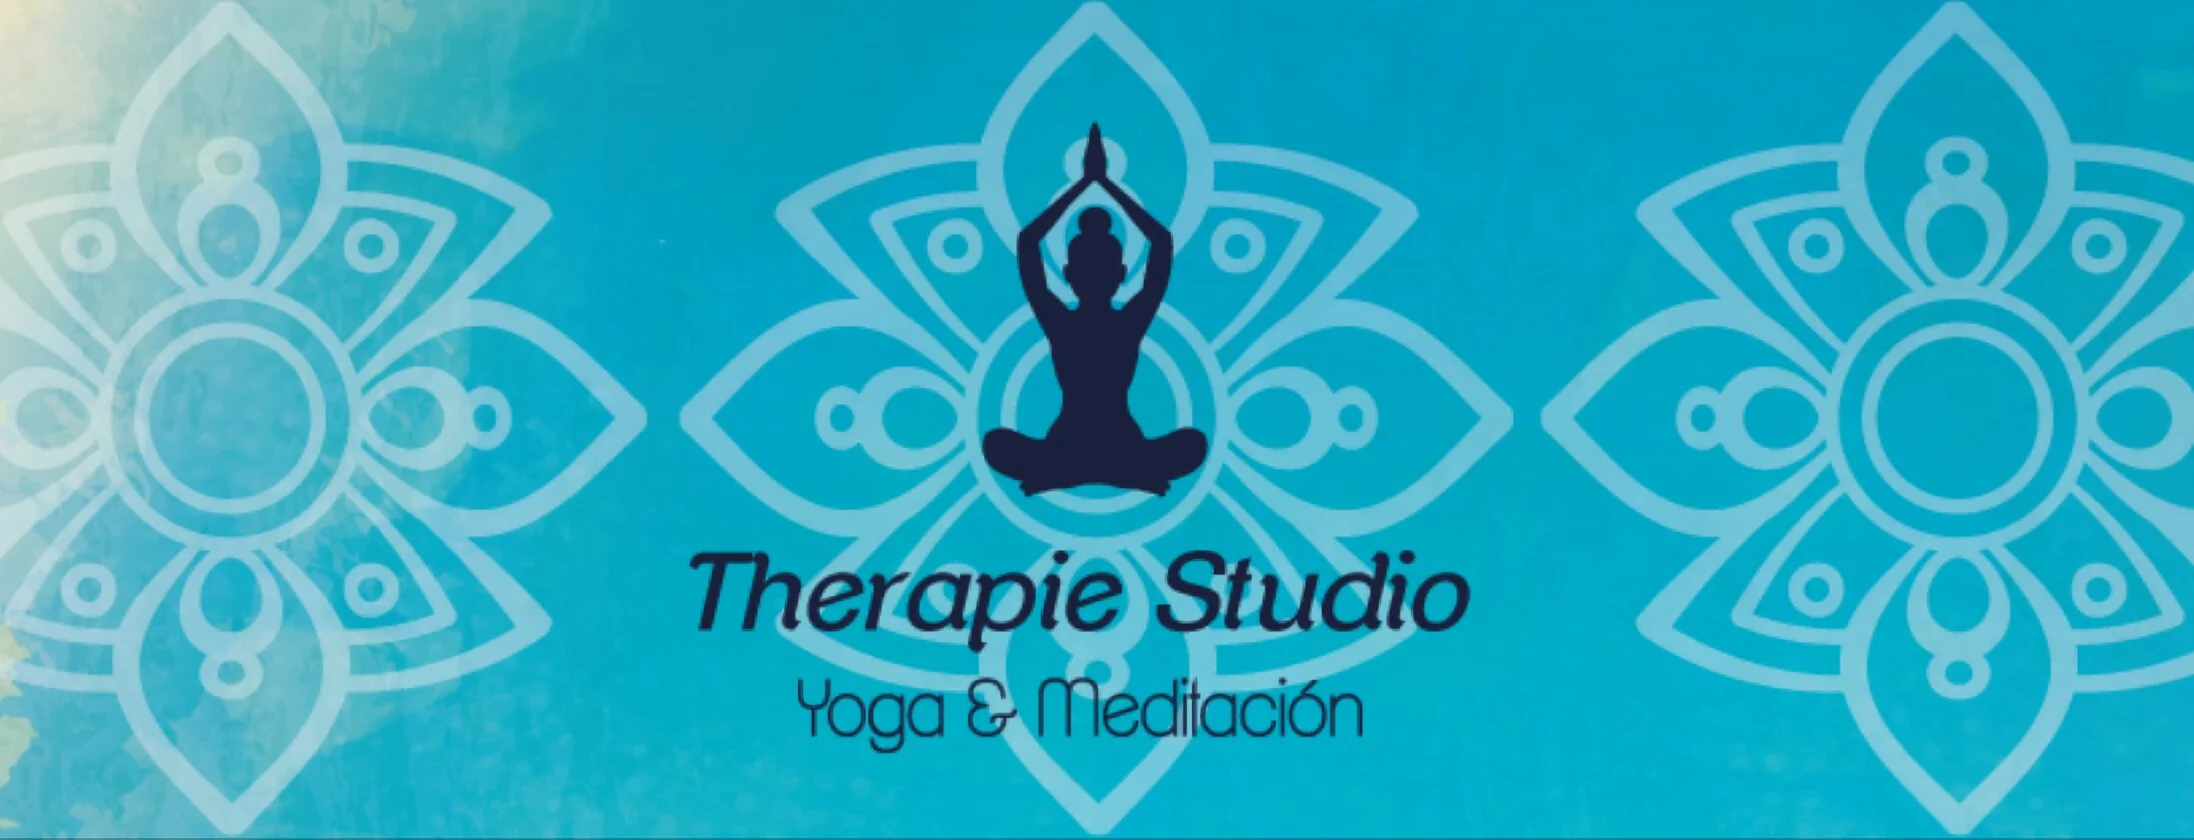 Therapie Studio - Yoga & Meditación-334